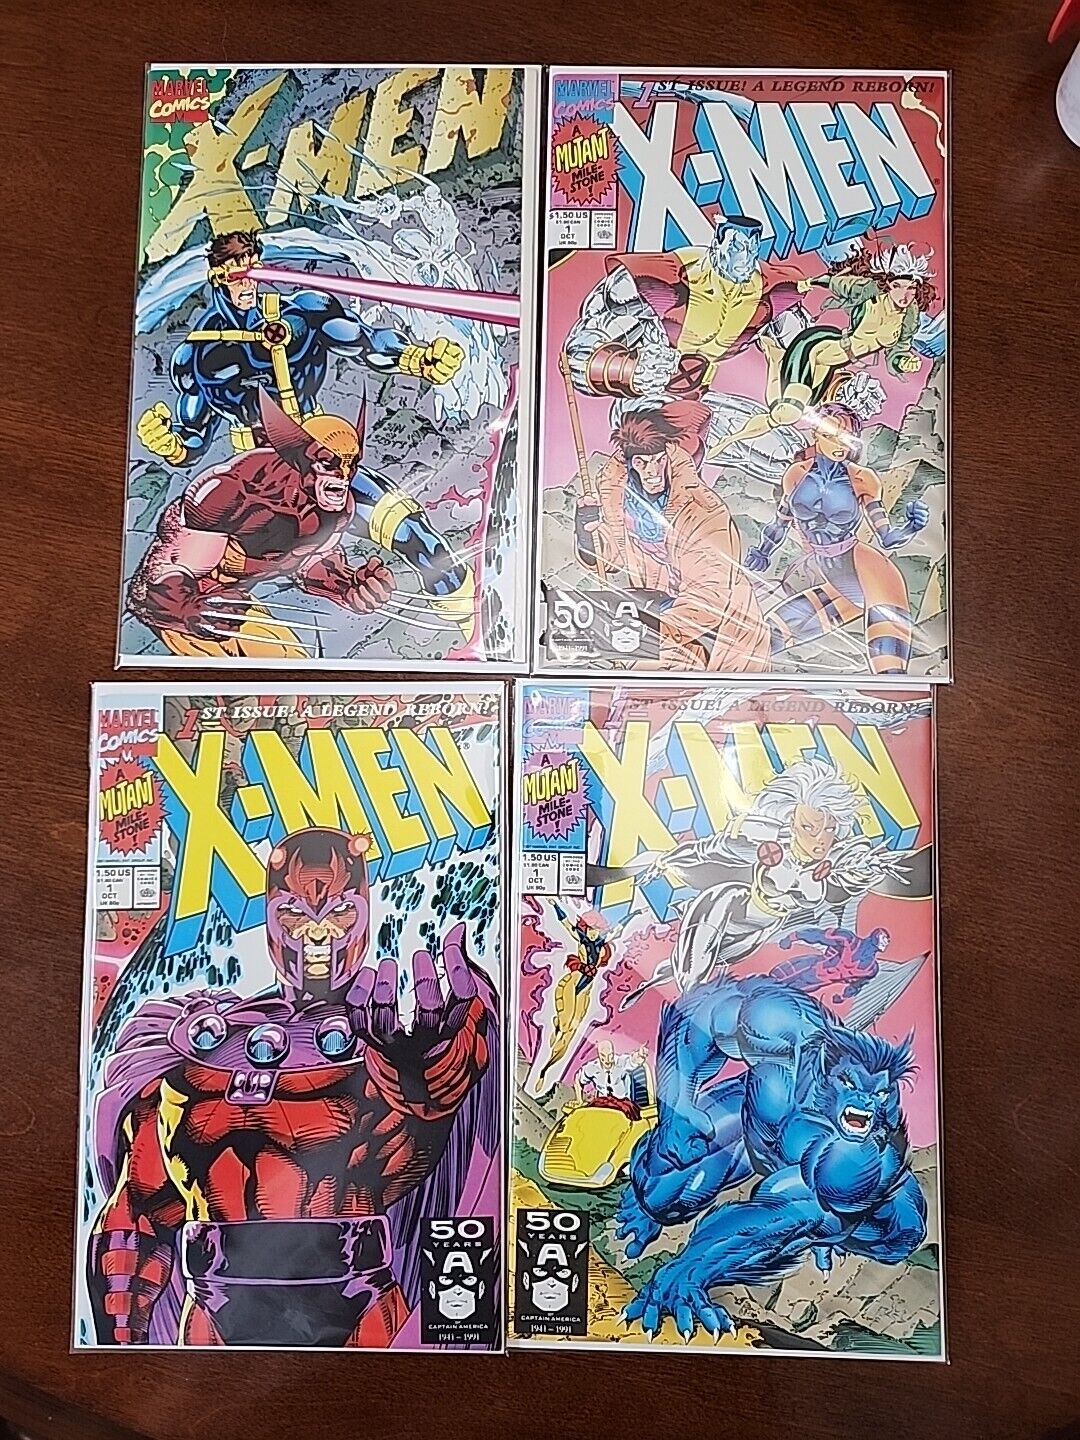 X-Men #1 Special Collectors Edition (Marvel Comics October 1991)